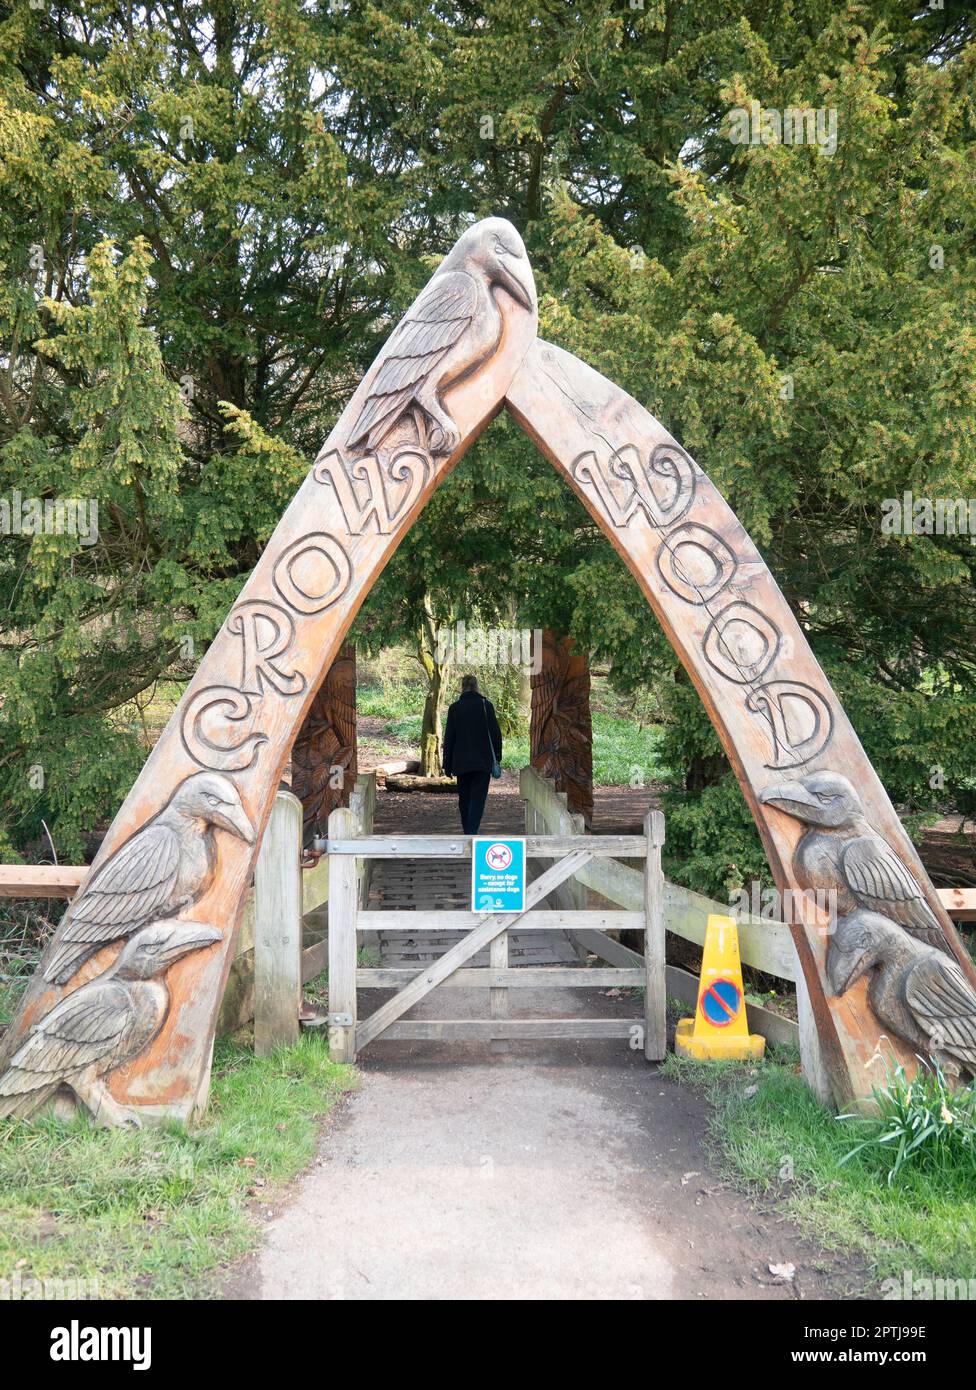 Arche en bois sculpté à l'entrée de Crow Wood une zone de forêt pour l'amusement et l'étude au Centre de North Yorkshire Moors Danby Banque D'Images